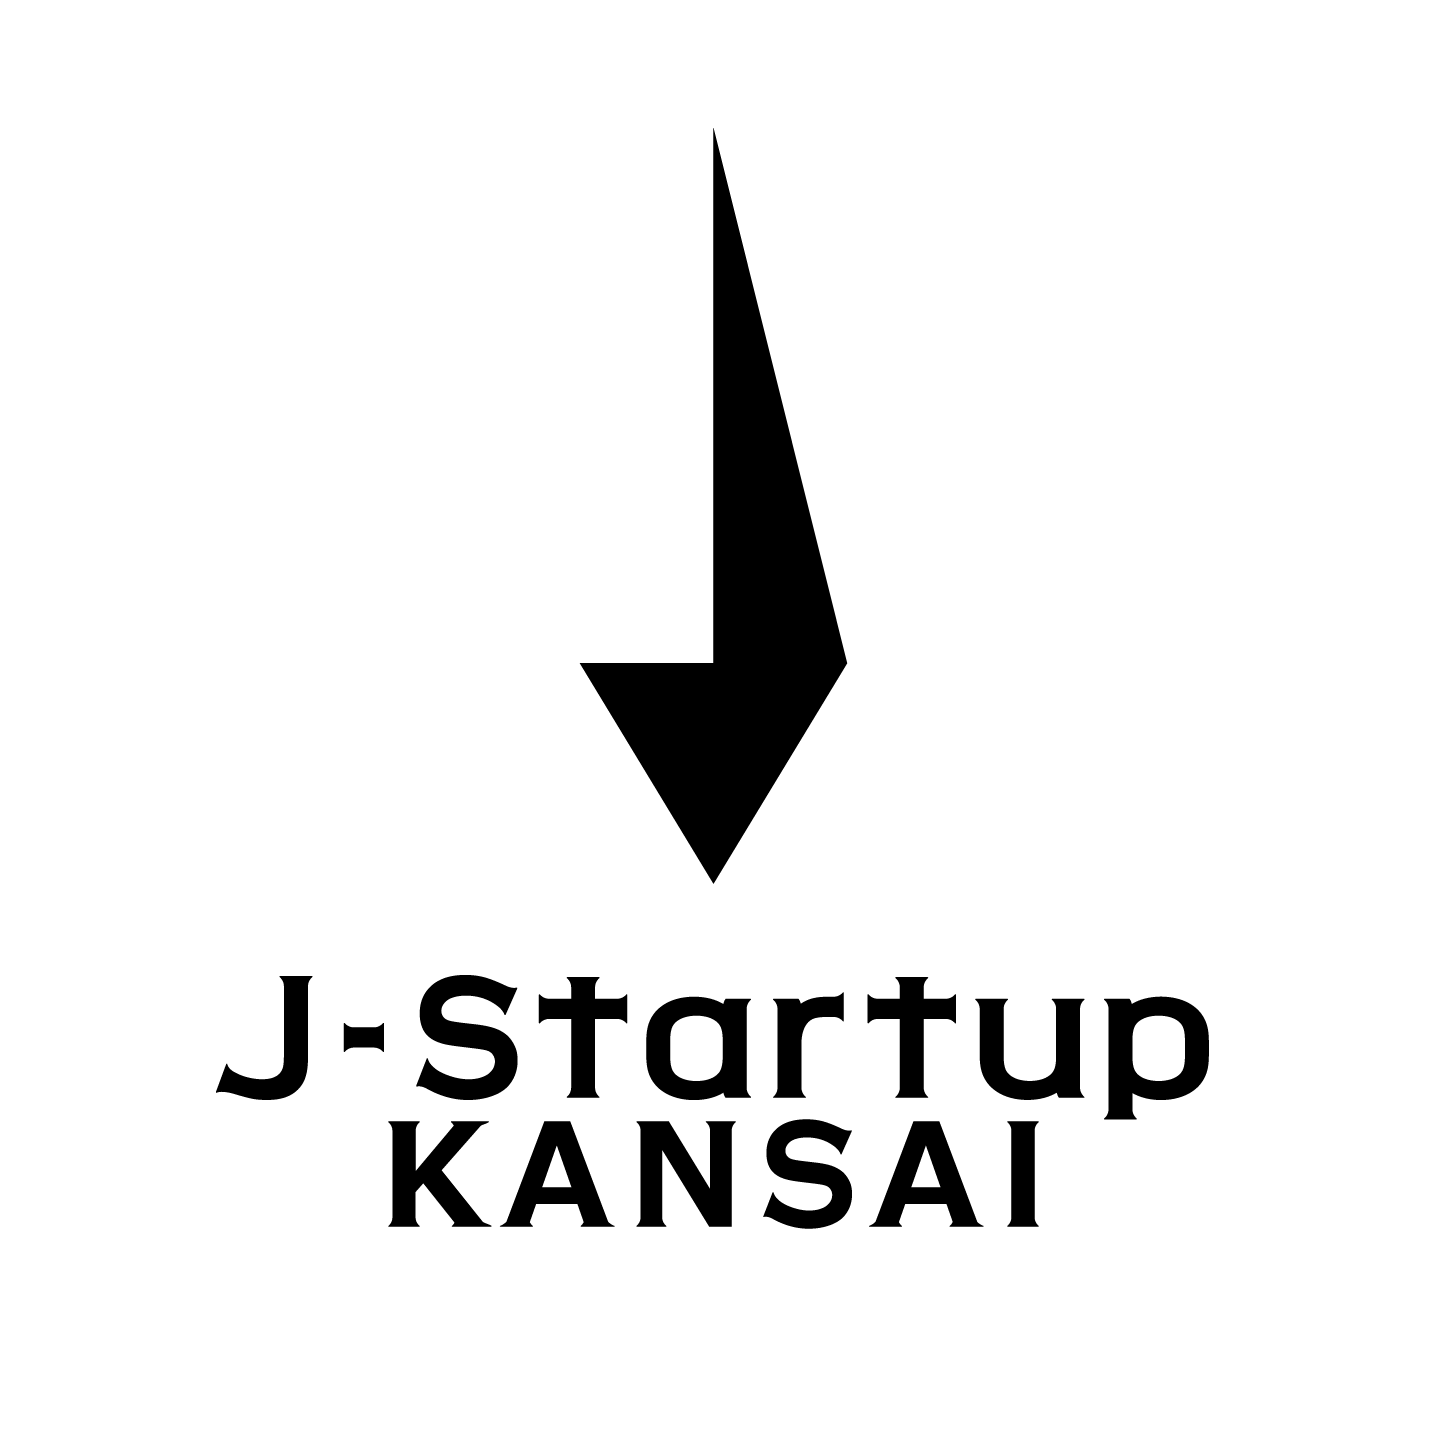 「J-Startup KANSAI」の新たな選定企業を発表～関西の有望スタートアップ12社を選定！～